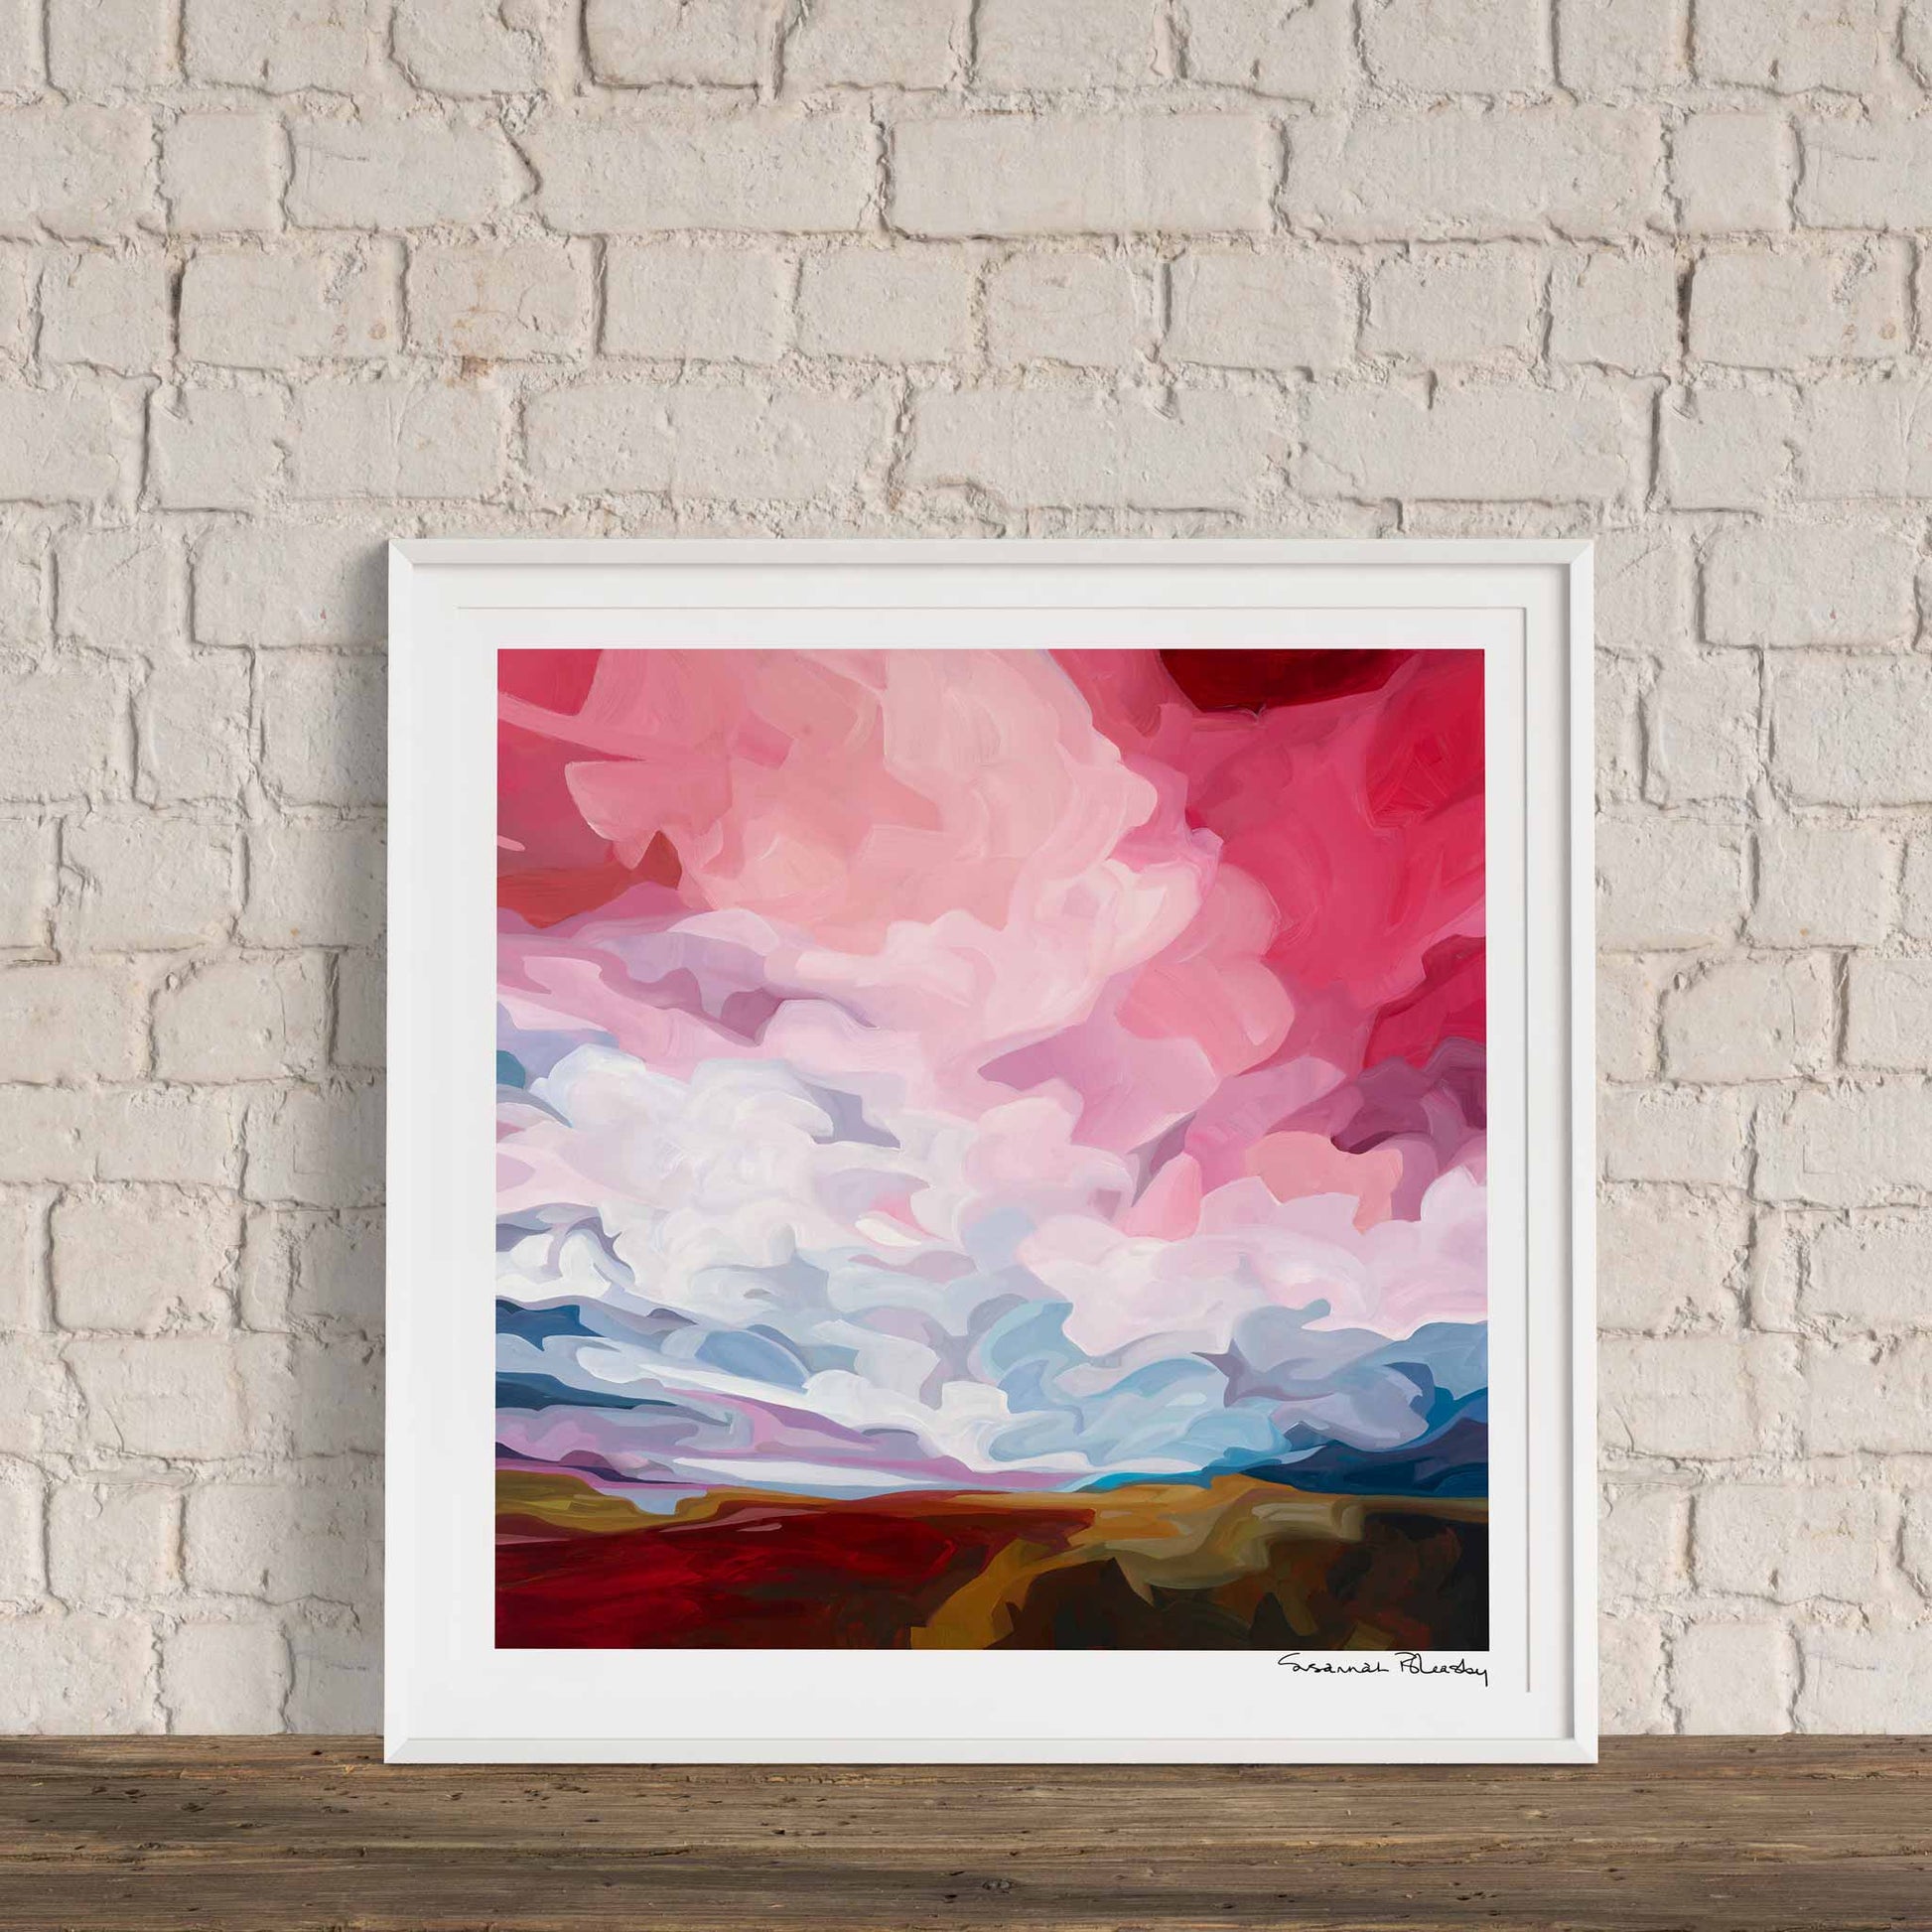 Acrylic sky painting print of a dramatic sky framed as a wall art by Canadian artist Susannah Bleasby